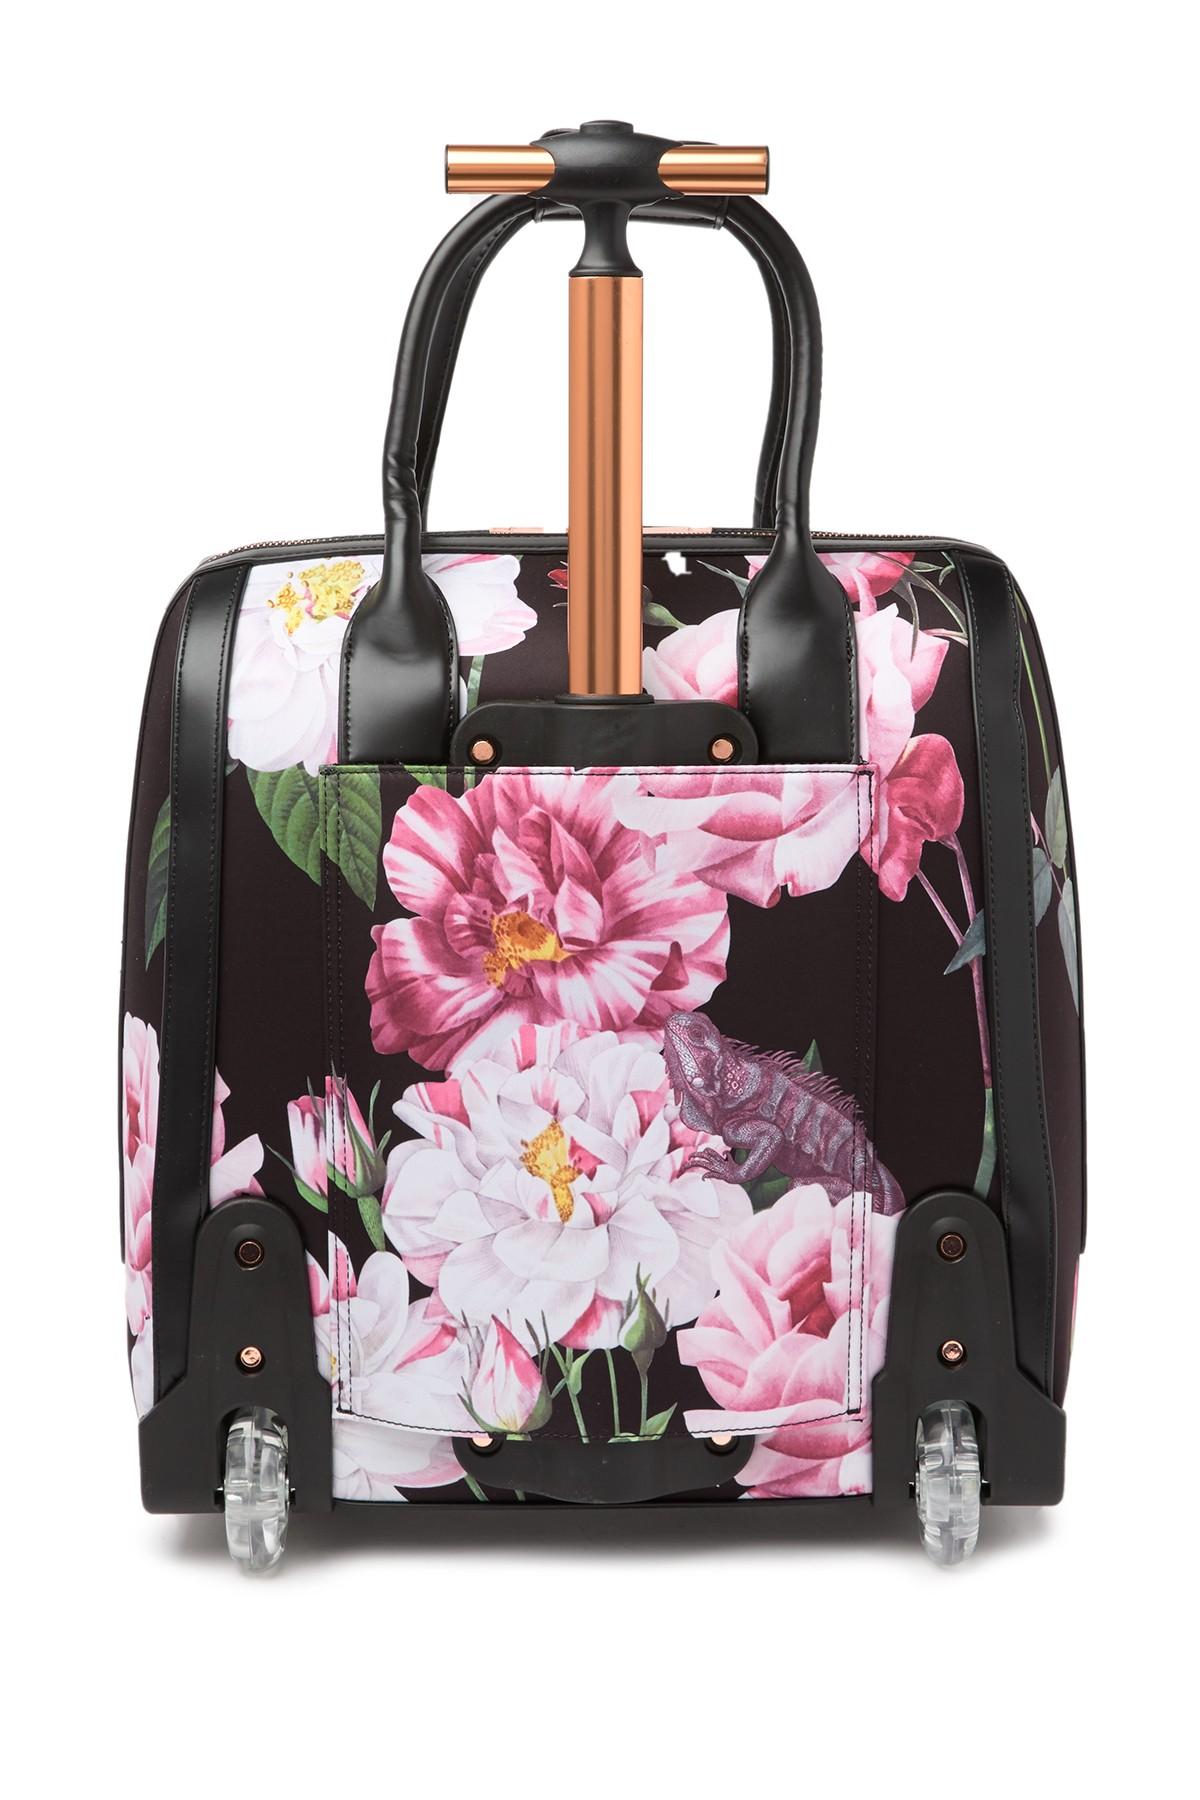 Ted Baker Womens Black Julliia Floral Travel Bag